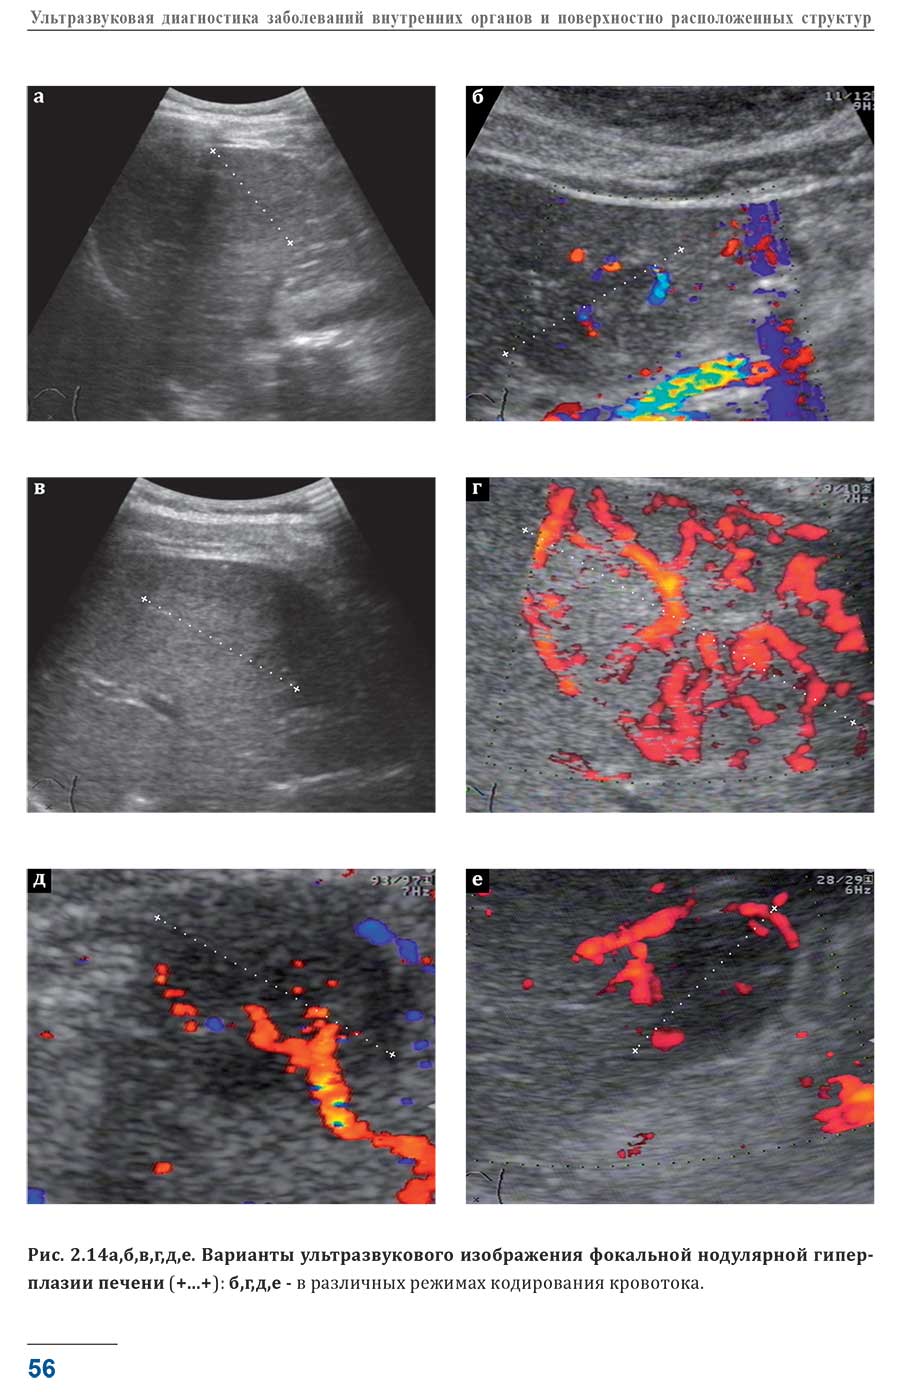 Варианты ультразвукового изображения фокальной нодулярной гиперплазии печени (+...+): б,г,Д,е - в различных режимах кодирования кровотока.